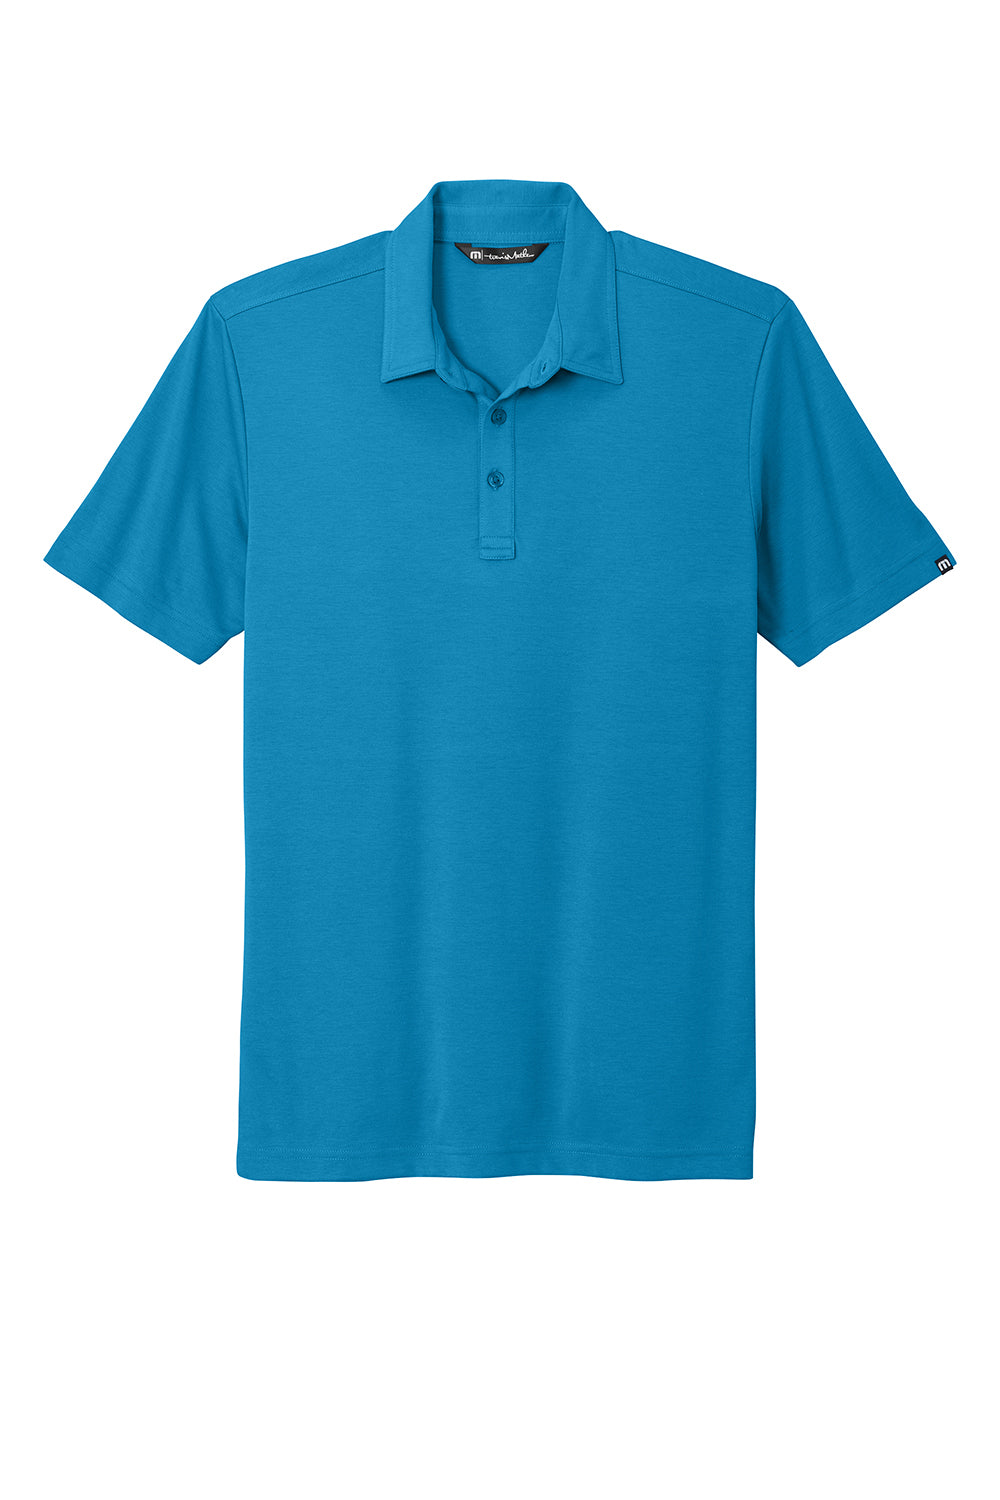 TravisMathew TM1MU411 Mens Oceanside Moisture Wicking Short Sleeve Polo Shirt Classic Blue Flat Front